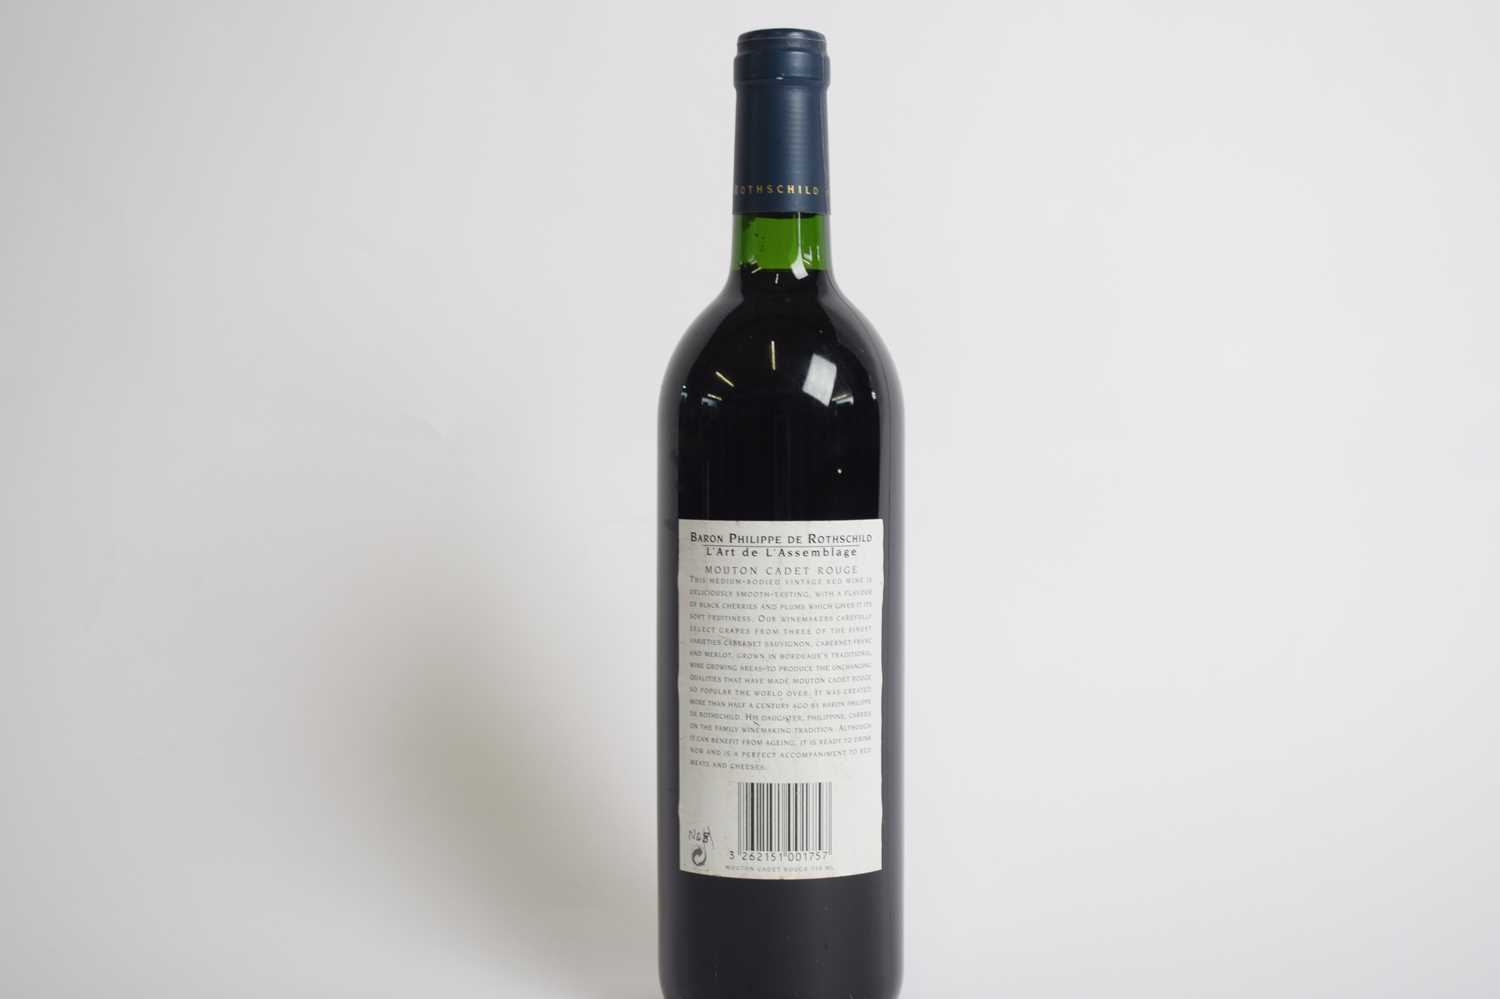 One bottle Mouton Cadet Bordeaux 2000, 75cl - Image 3 of 3